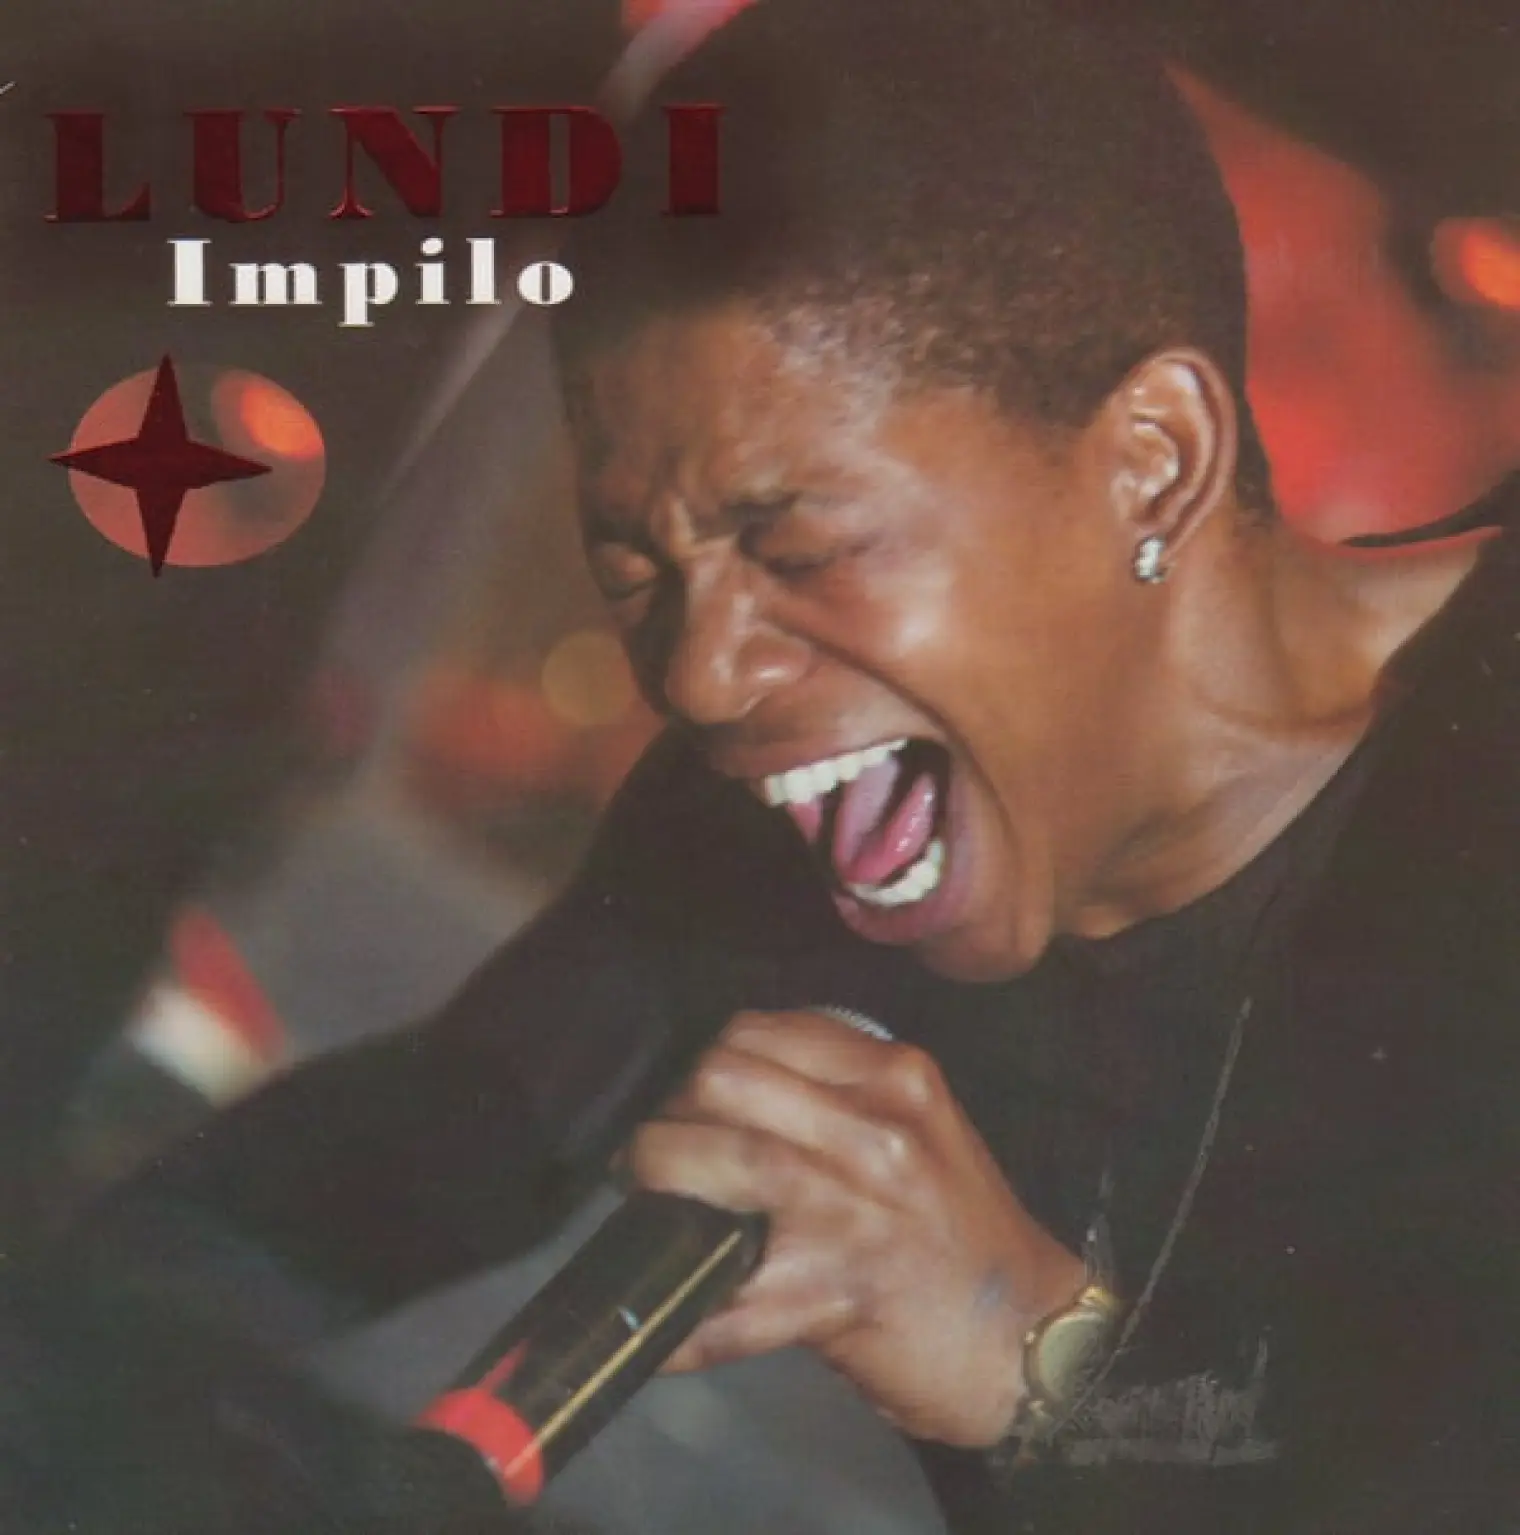 Impilo -  Lundi 